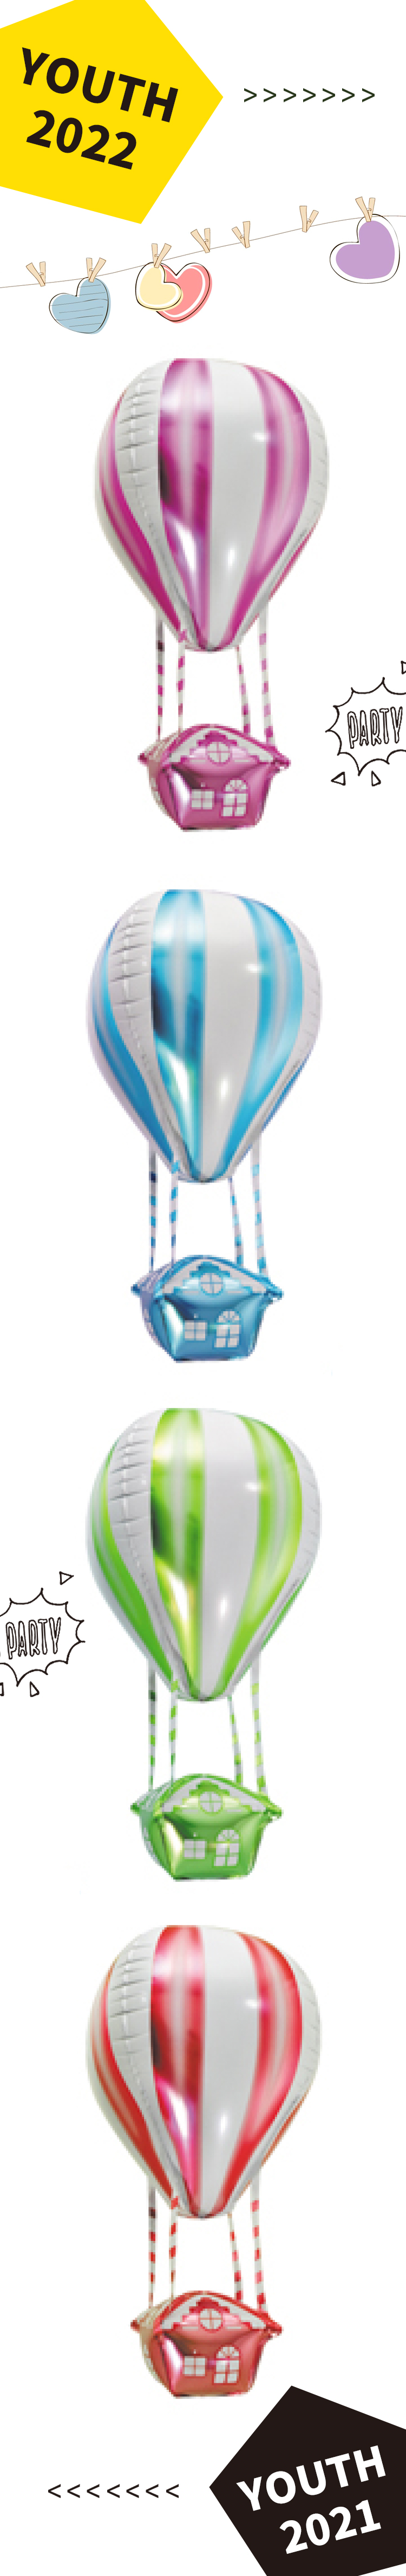 小屋热气球.jpg